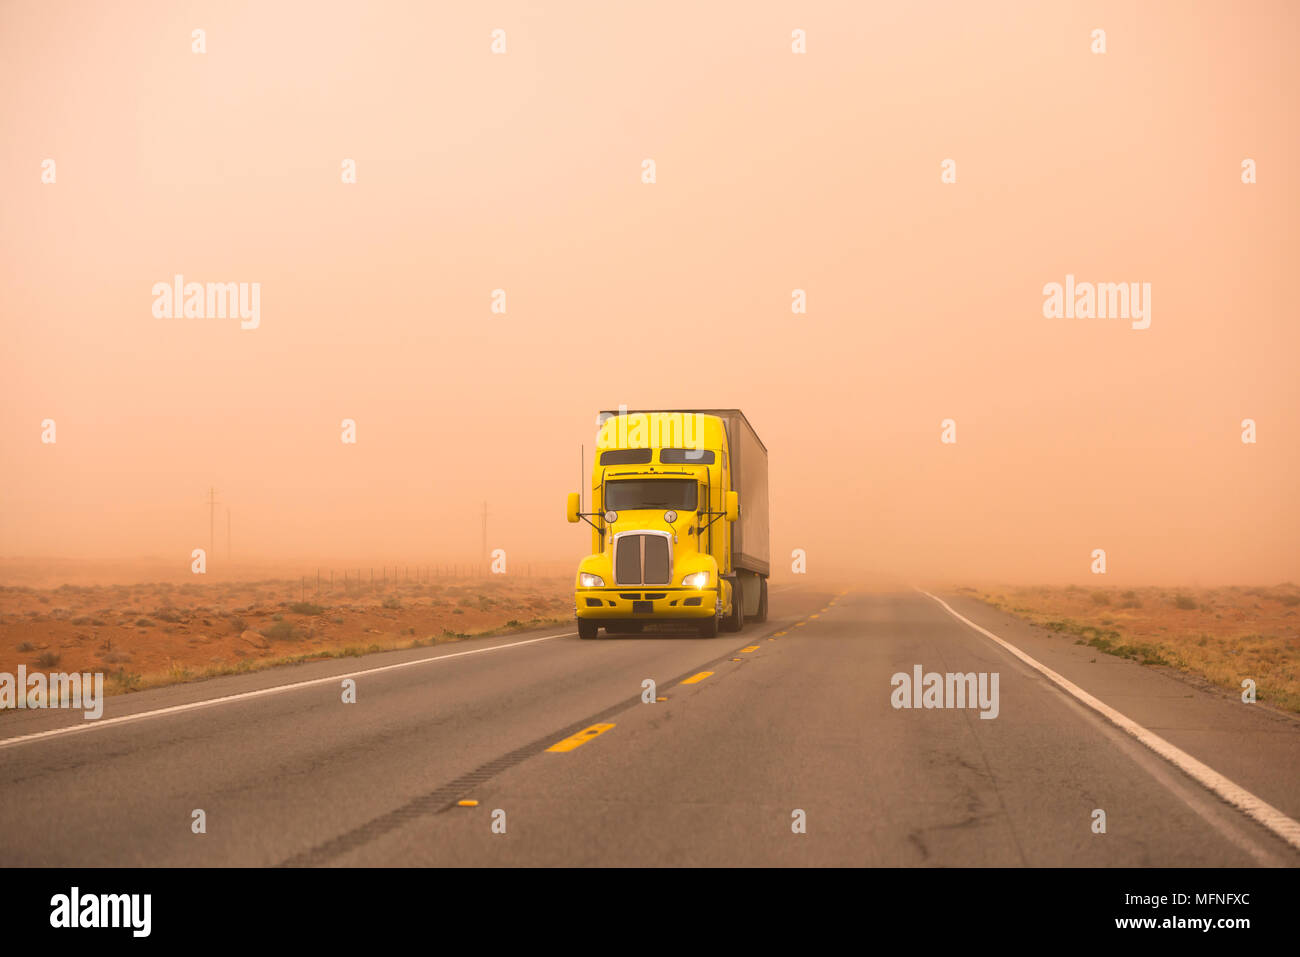 Gelb Big Rig Motorhaube leistungsfähige Semi Truck mit Auflieger Pflege gekühlt reefer Cargo gehen Fahrten während riesige starken Sandsturm mit schlechter Sicht o Stockfoto